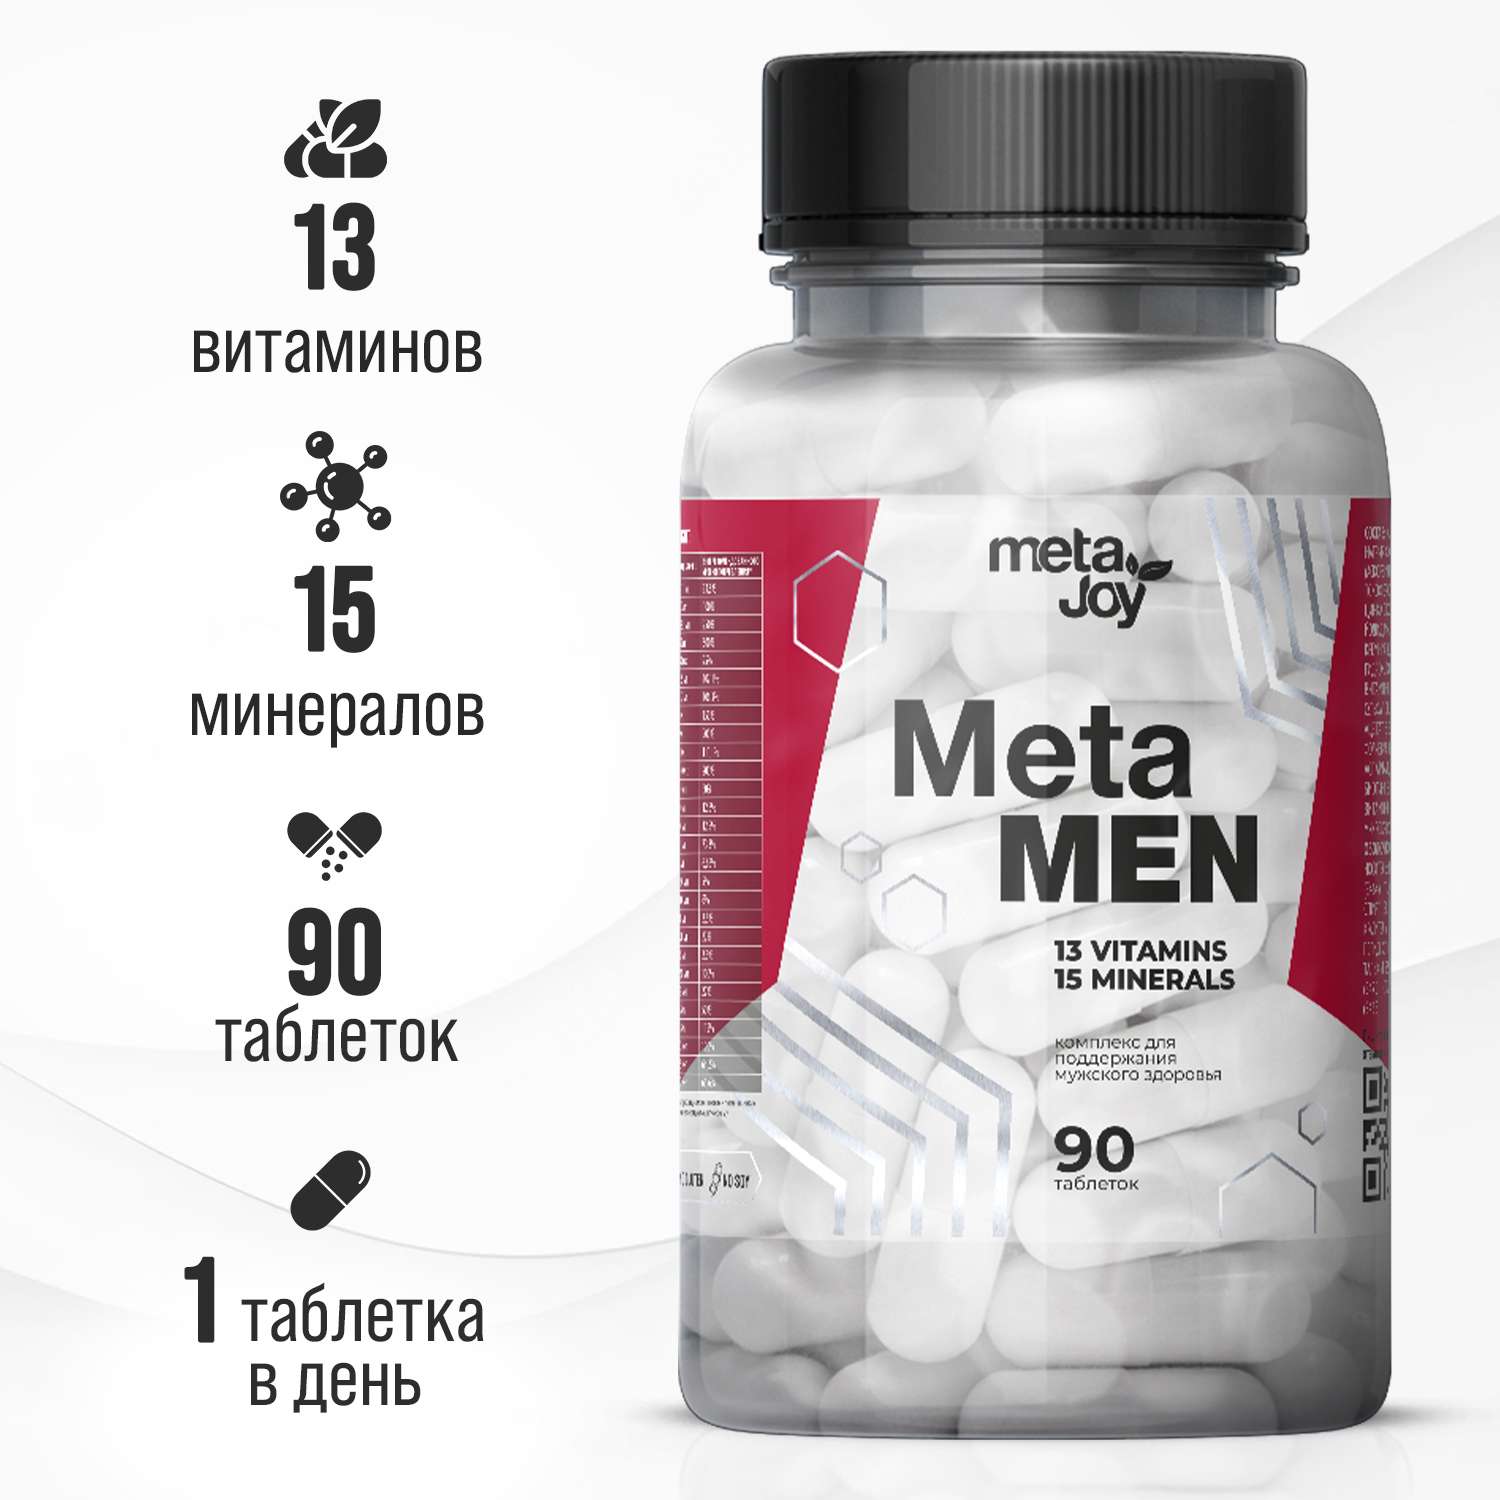 Витаминно-минеральный комплекс MetaJoy для мужчин Meta Men 13 витаминов 90 таблеток - фото 1